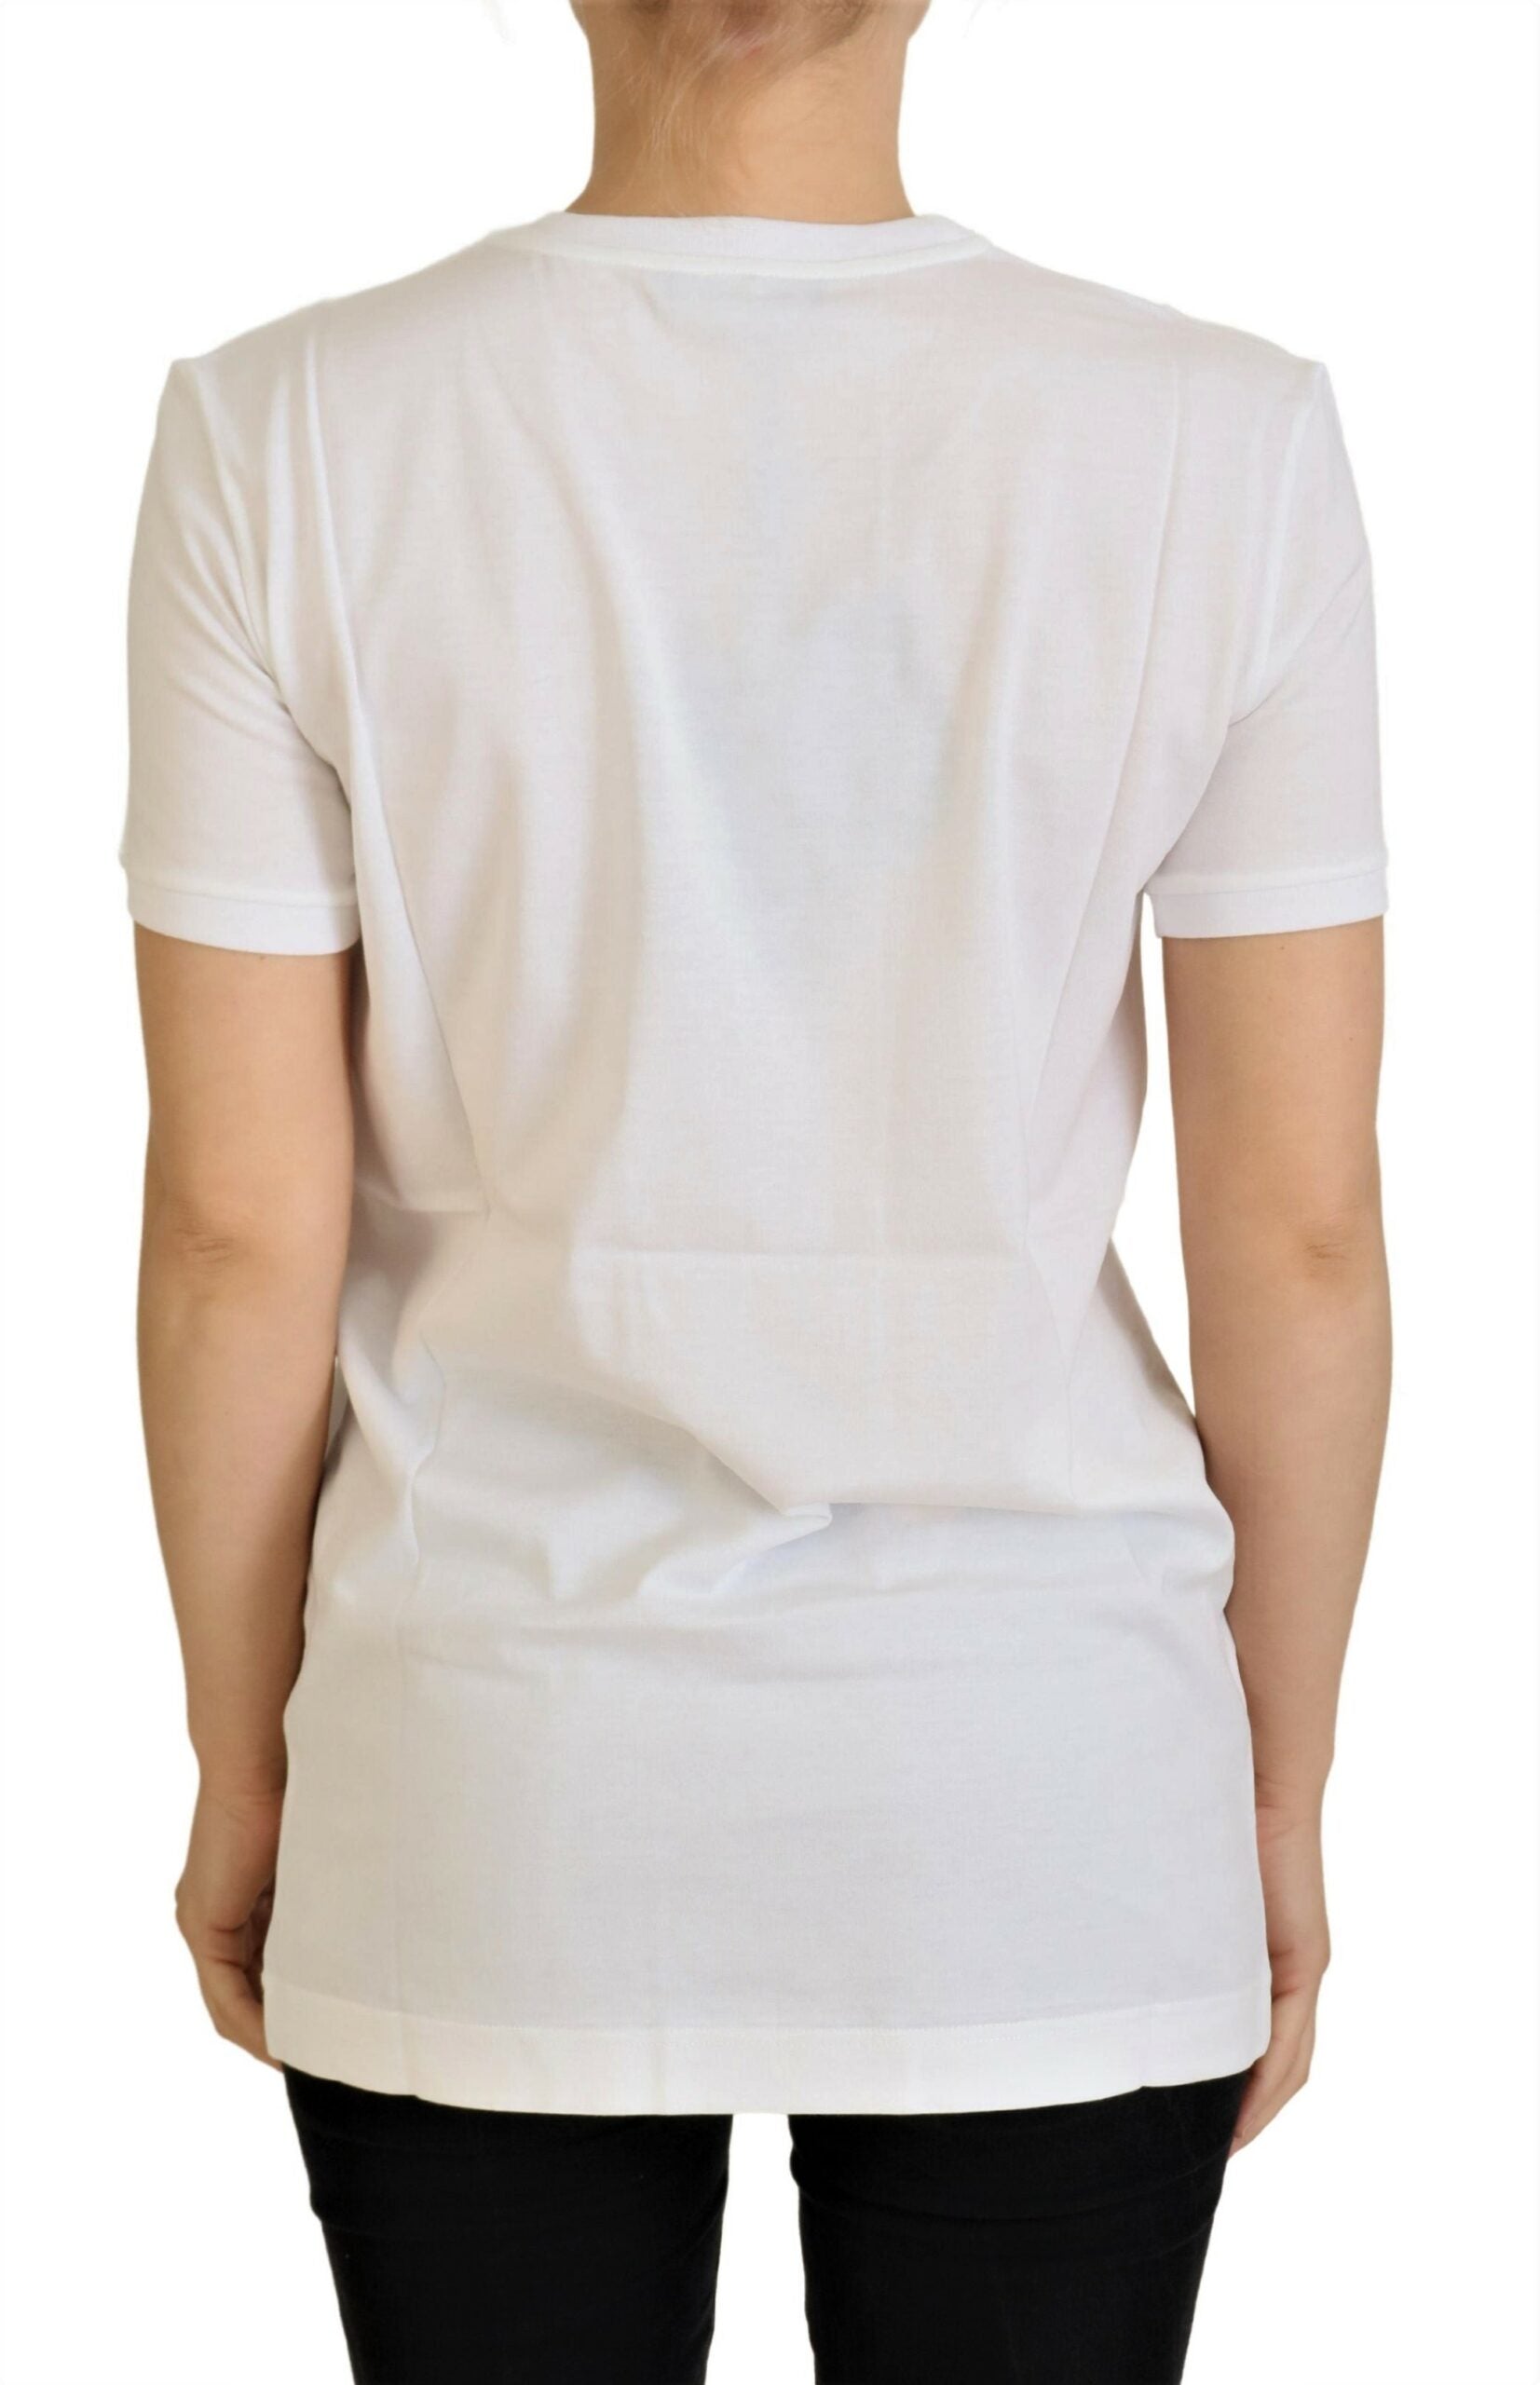 Бяла памучна тениска Dolce &amp; Gabbana DG Loves SUD